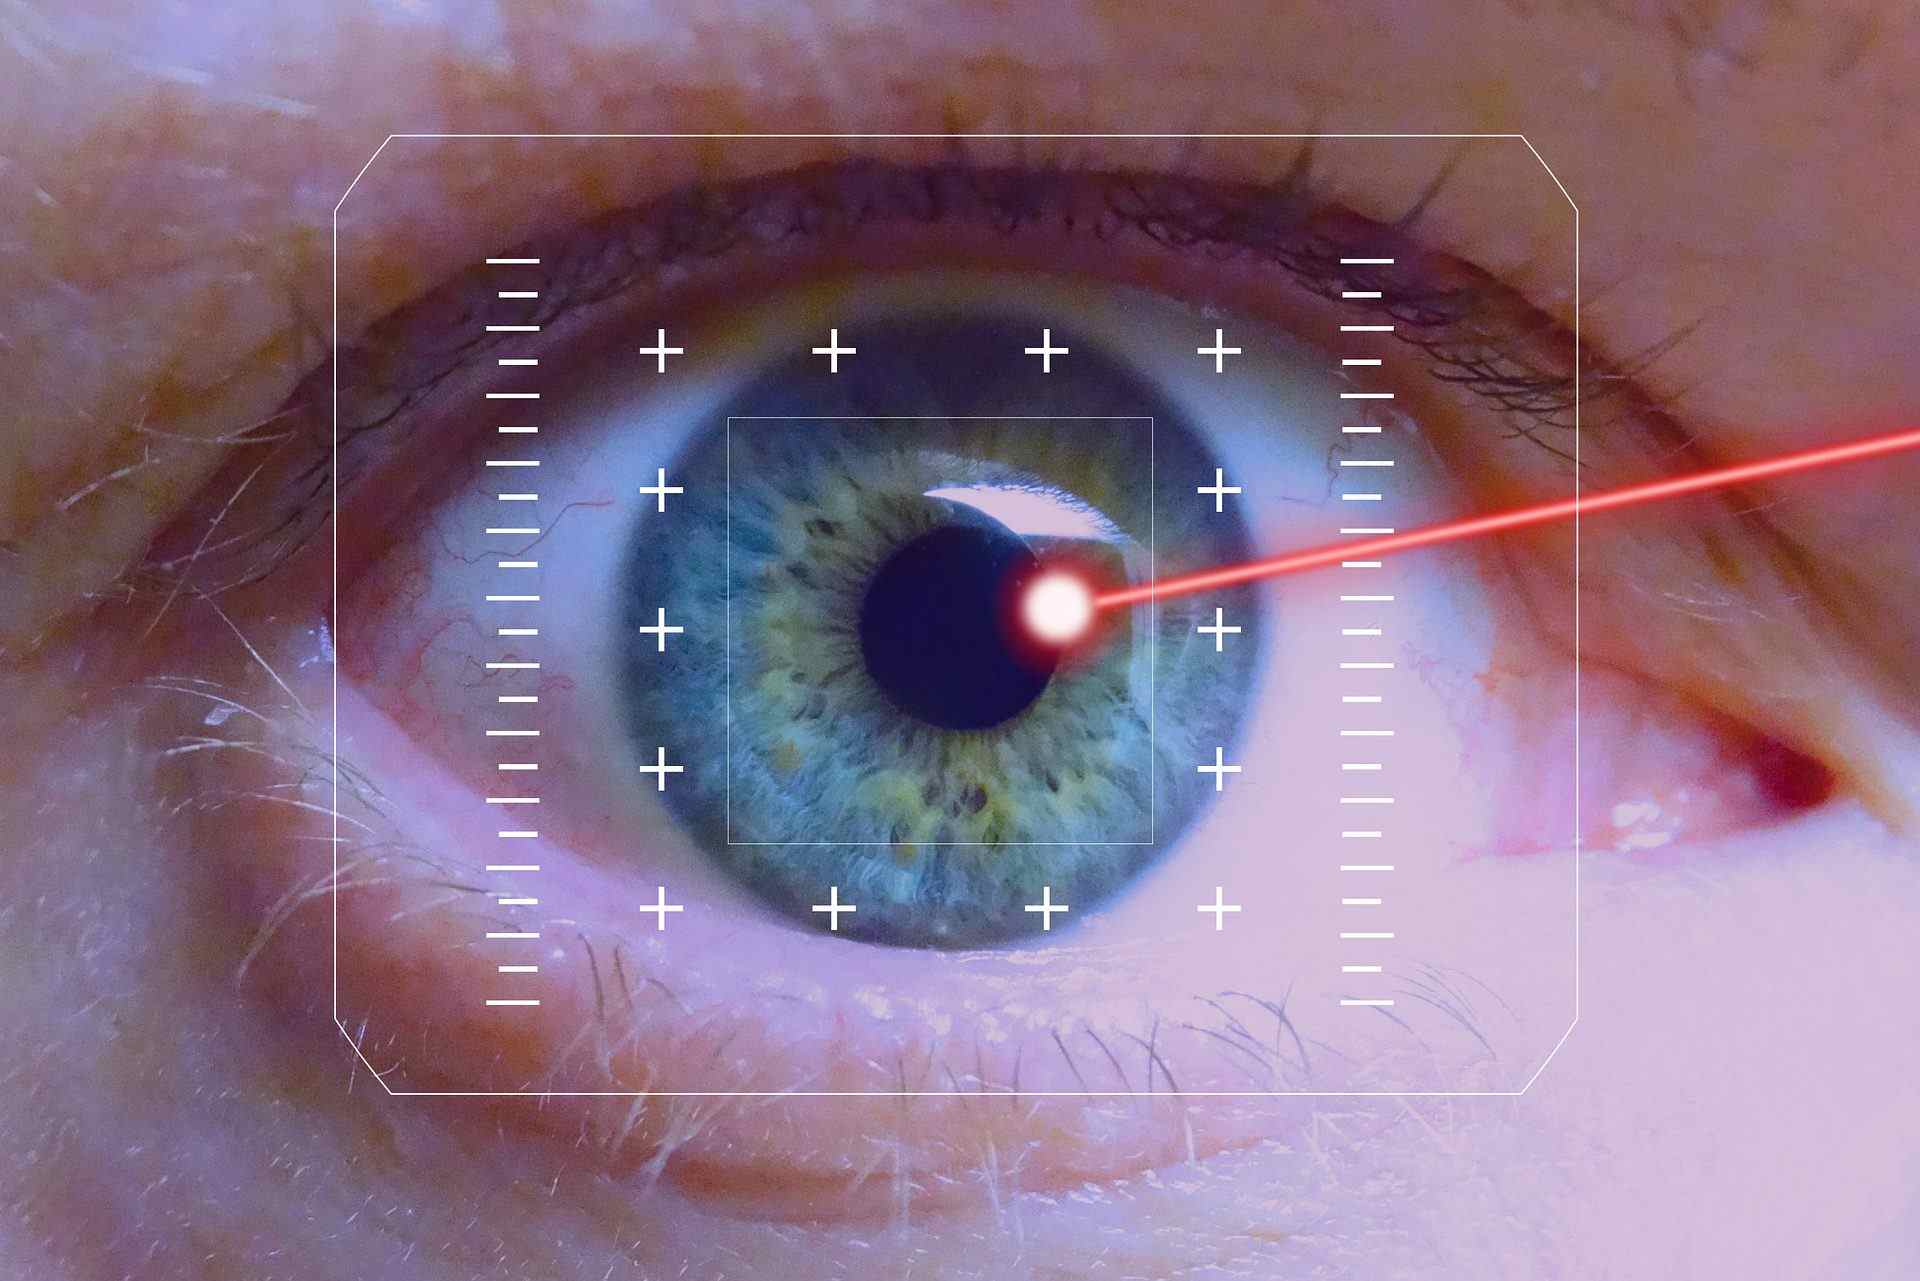 Göz çizdirme ameliyatı nasıl yapılır? 2022 göz çizdirme ücretleri